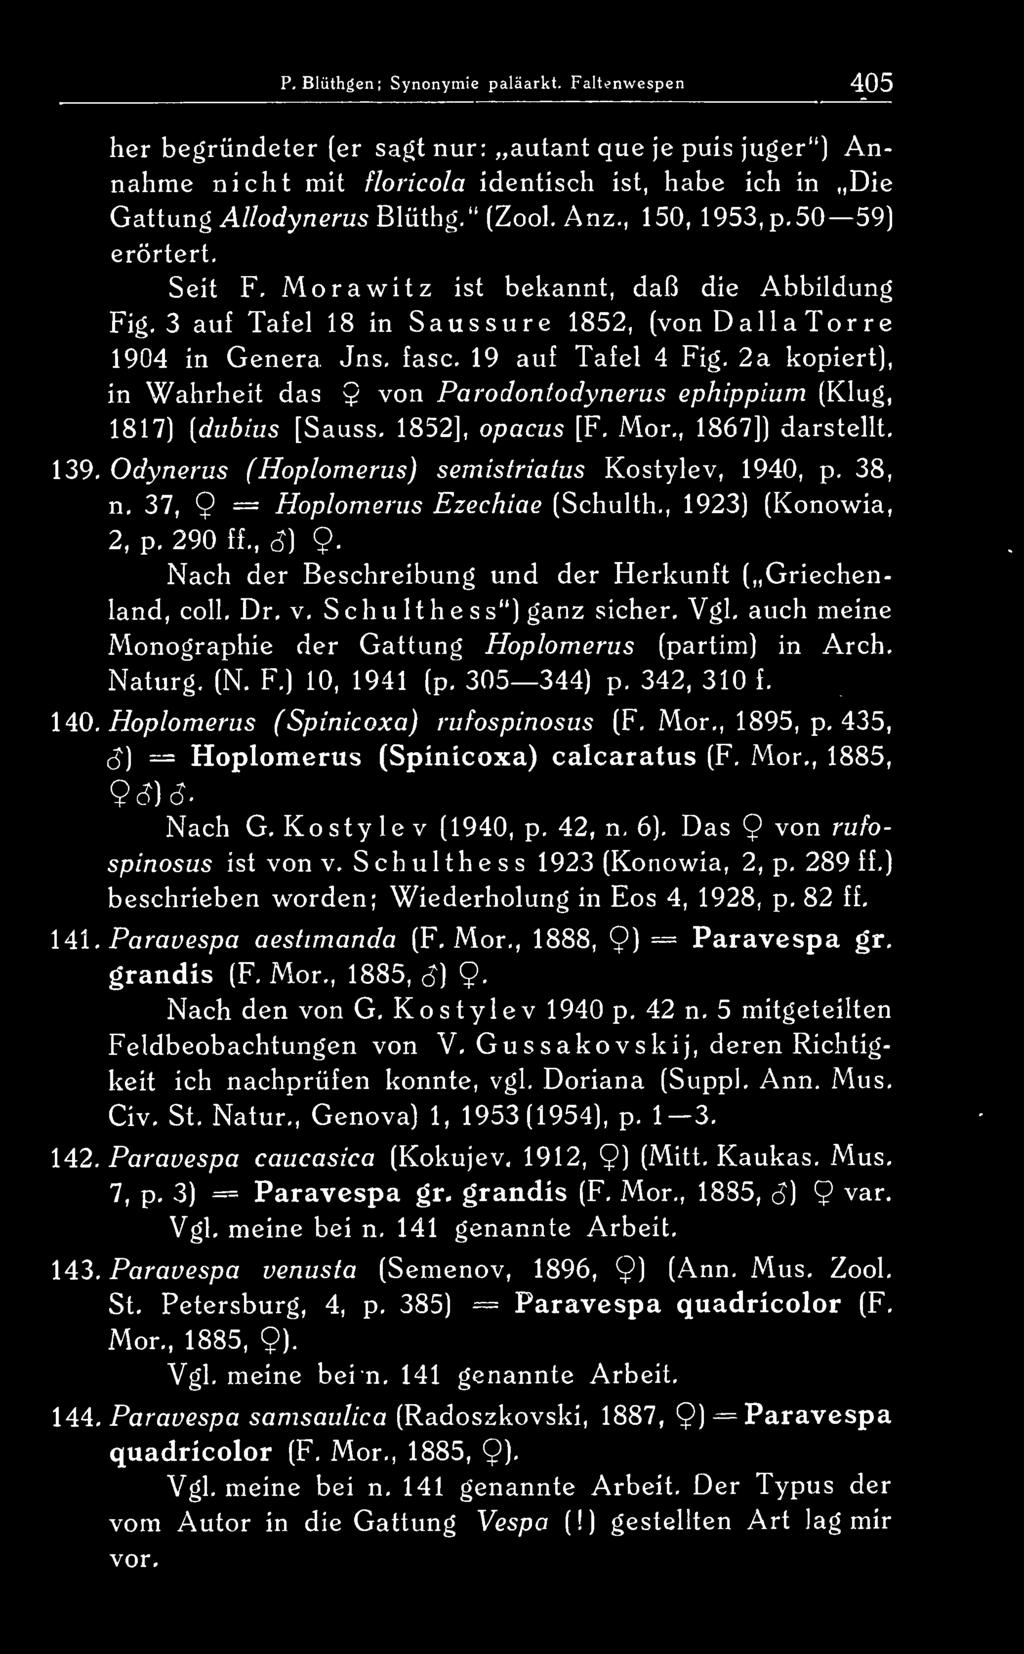 19 auf Tafel 4 Fig, 2a kopiert), in Wahrheit das $ von Parodontodynerus ephippium (Klug, 1817) [duhius [Sauss. 1852], opacus [F. Mor., 1867]) darstellt. 139.